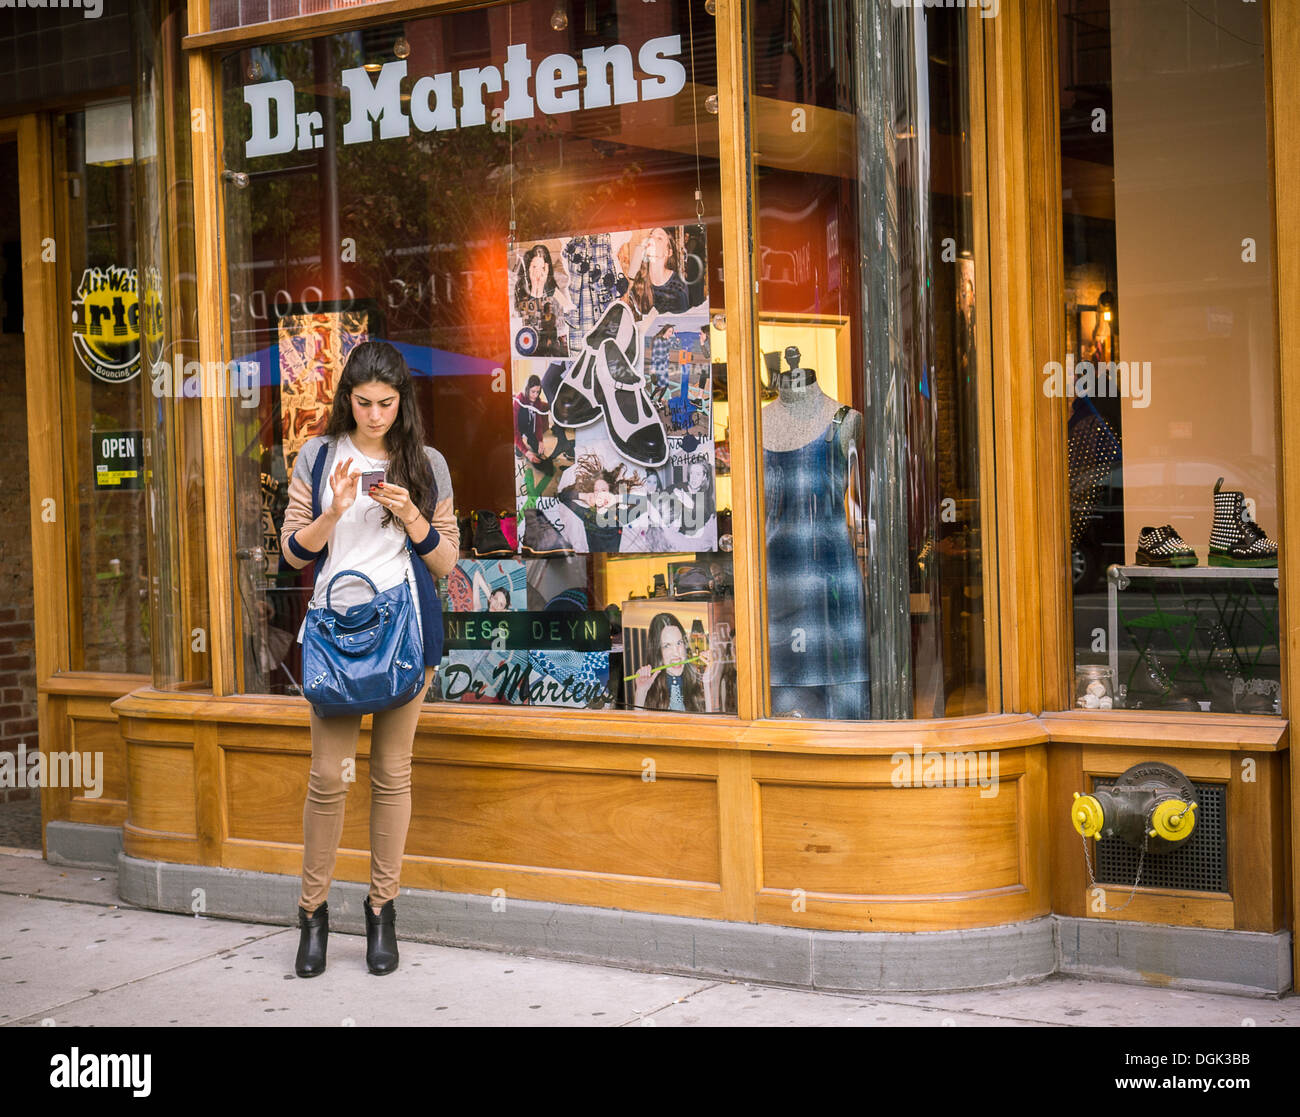 Un magasin de chaussures Dr. Martens à New York Photo Stock - Alamy